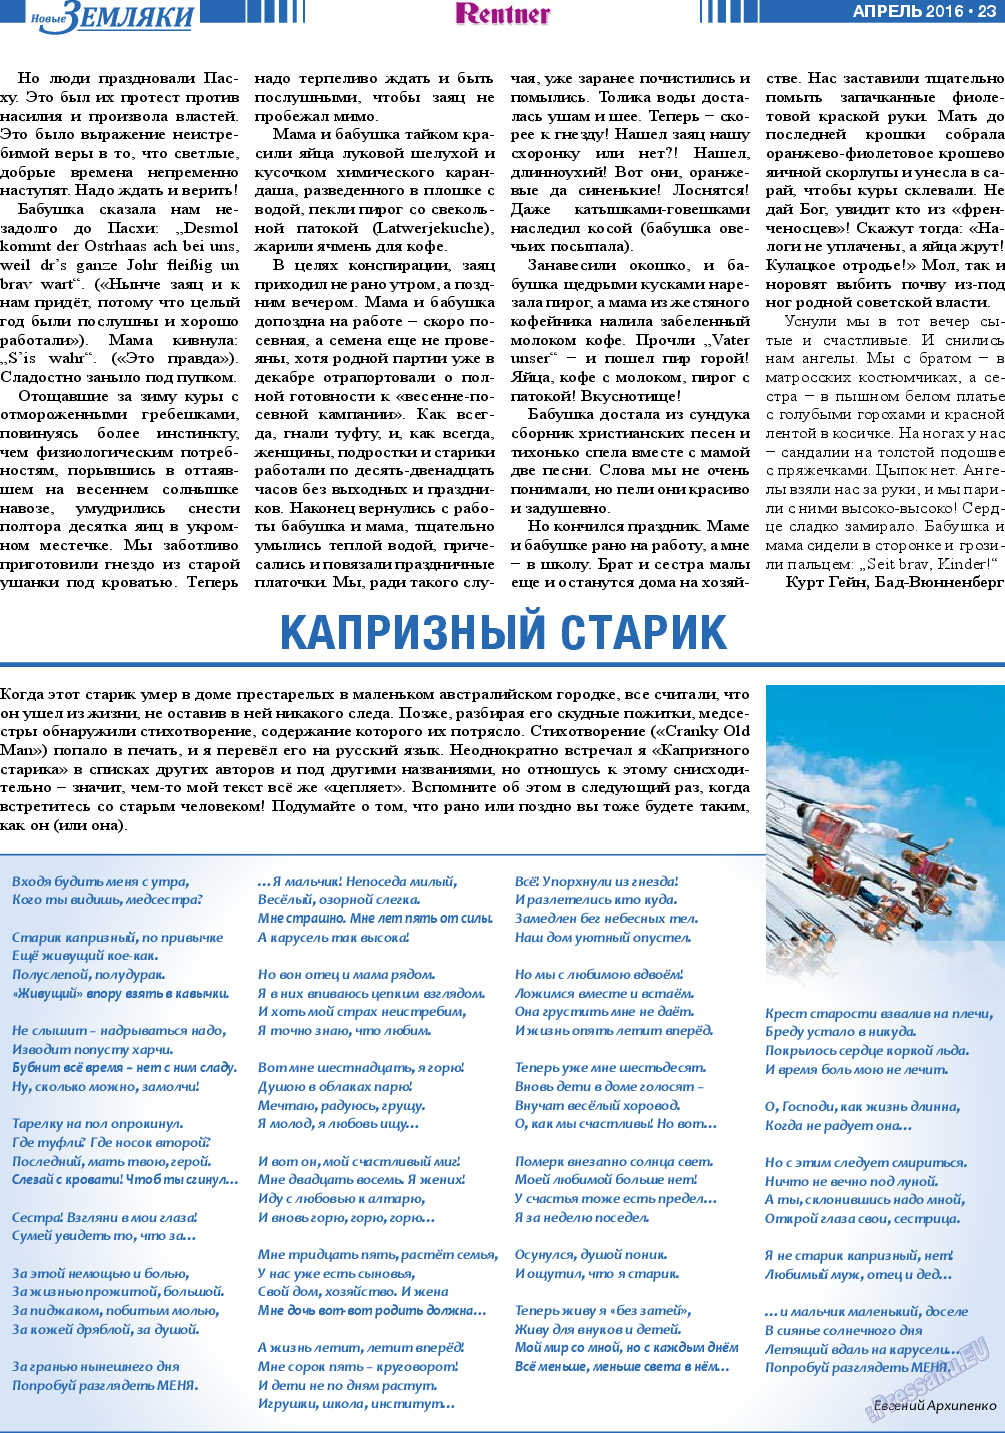 Новые Земляки, газета. 2016 №4 стр.23